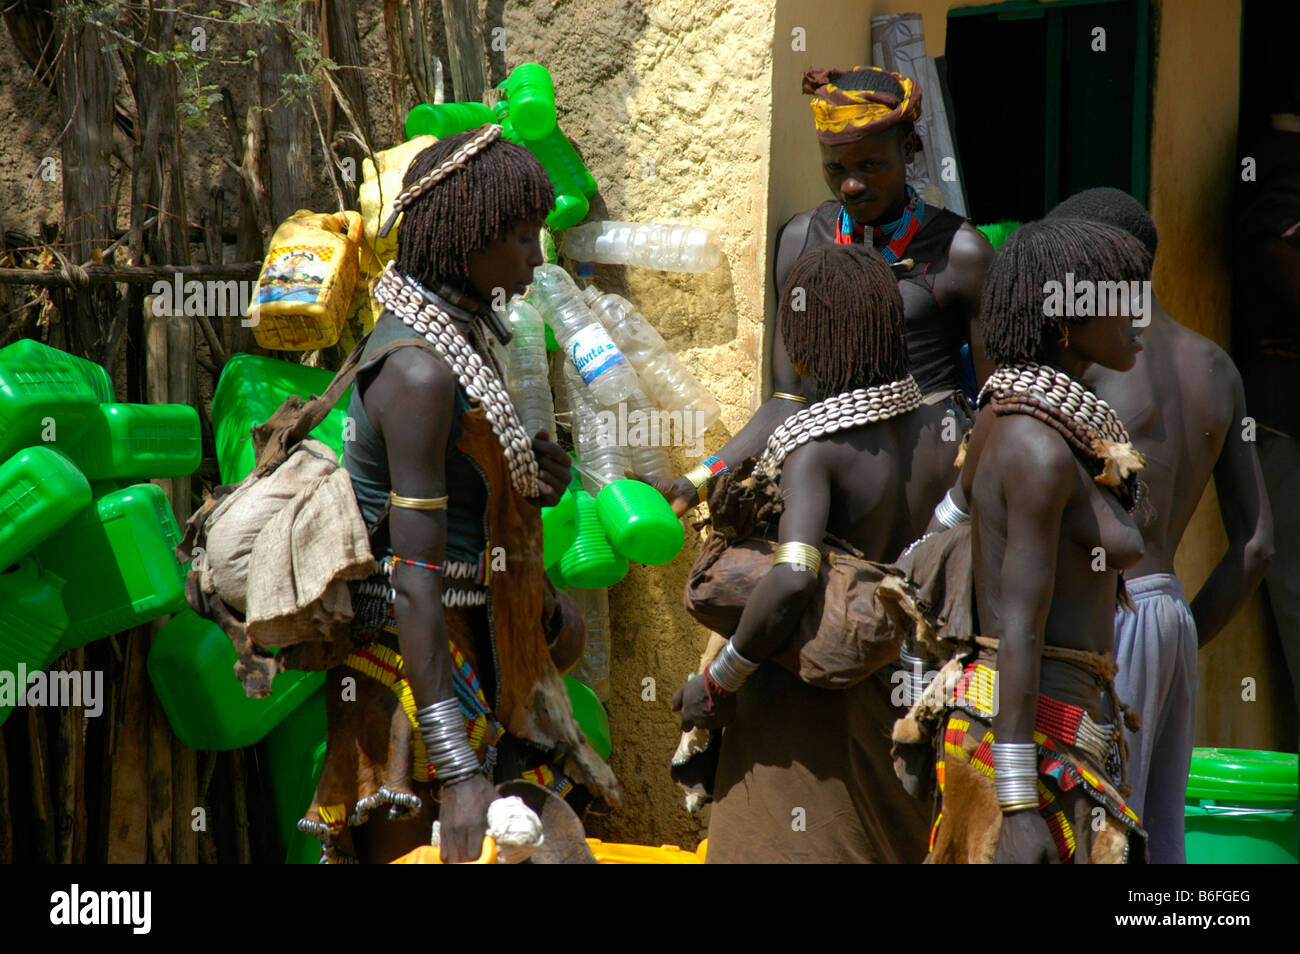 Nero scuoiati Hamar persone con il bianco kauri cozza collane di fronte verde barattoli di plastica, mercato di Dimeka, Etiopia, un Foto Stock